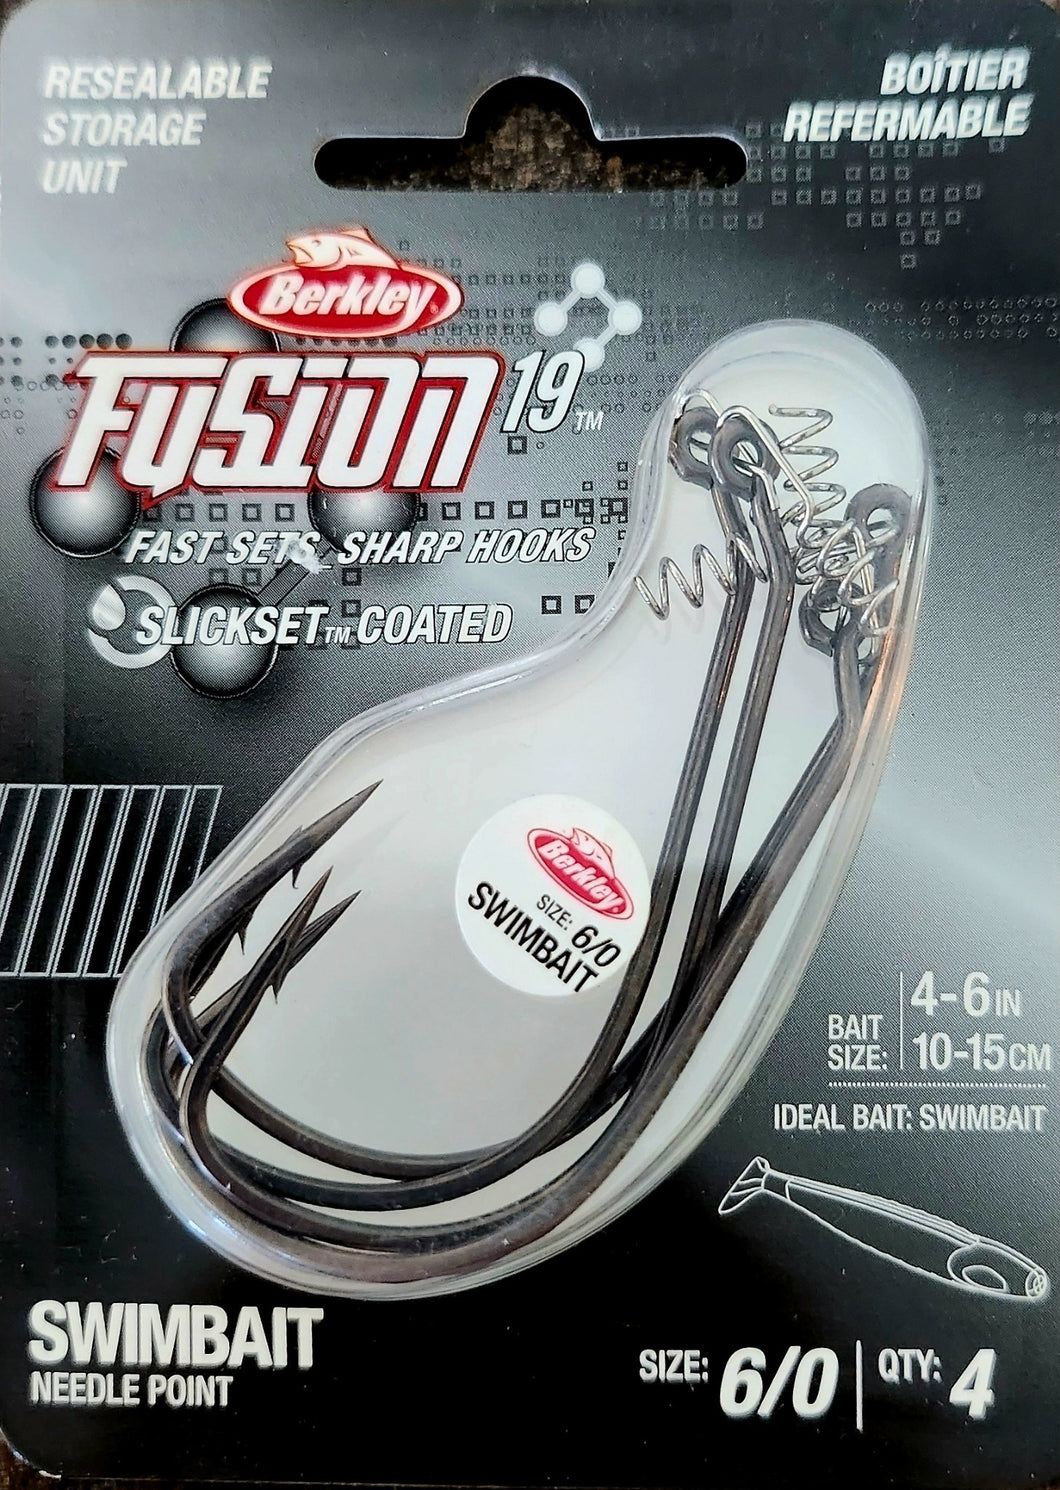 Berkley Fusion 19 Swimbait needlepoint